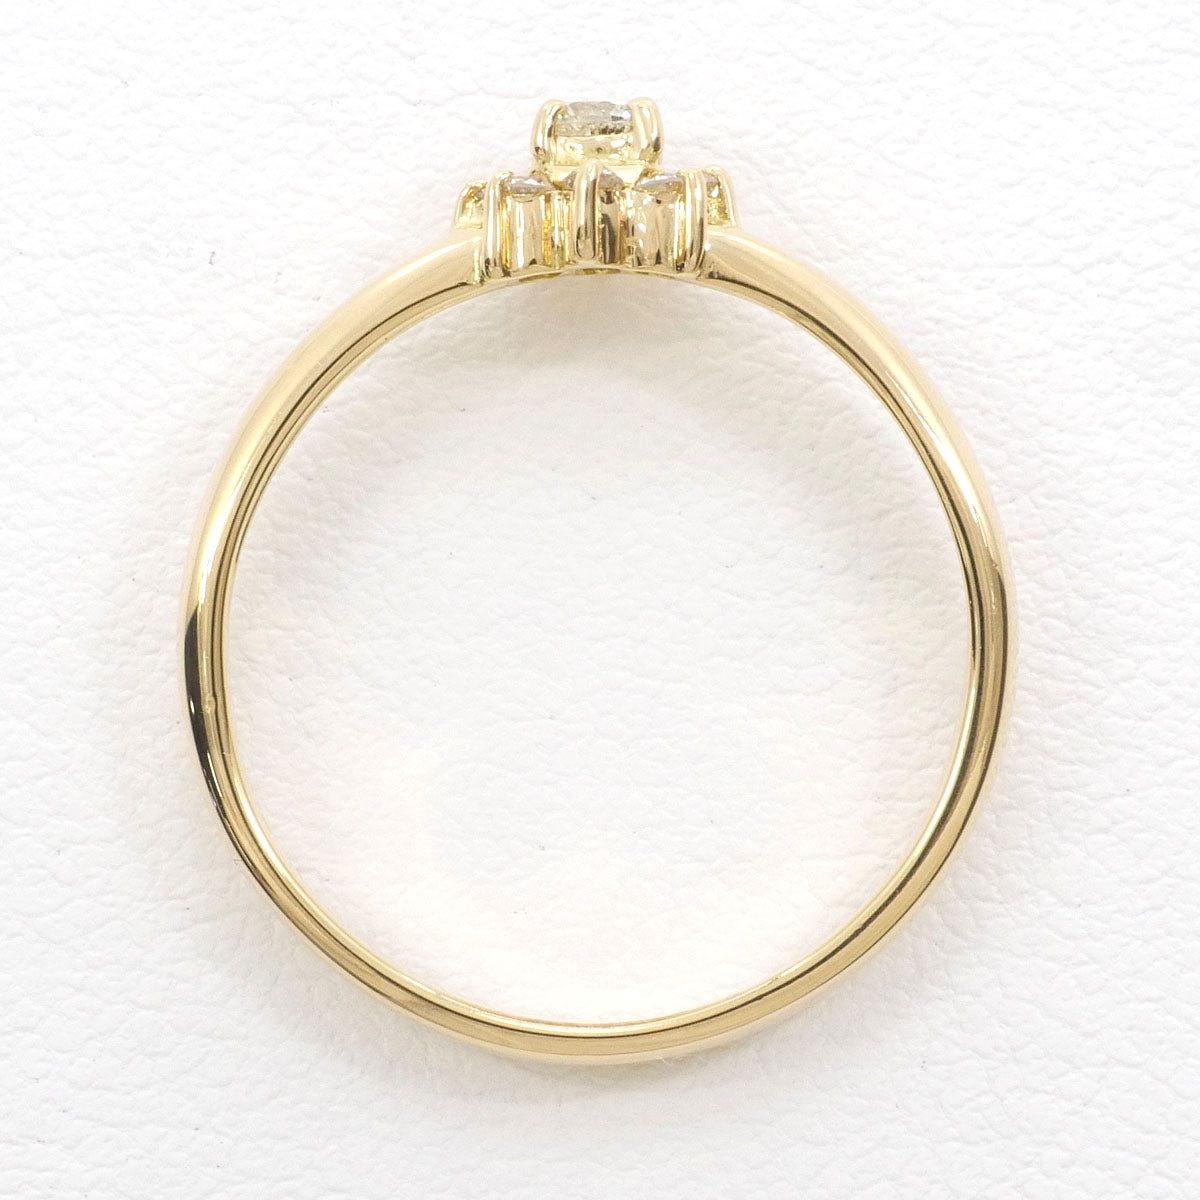 EA079 指輪 K18 ダイヤモンド リング 11号 4.8g付属品